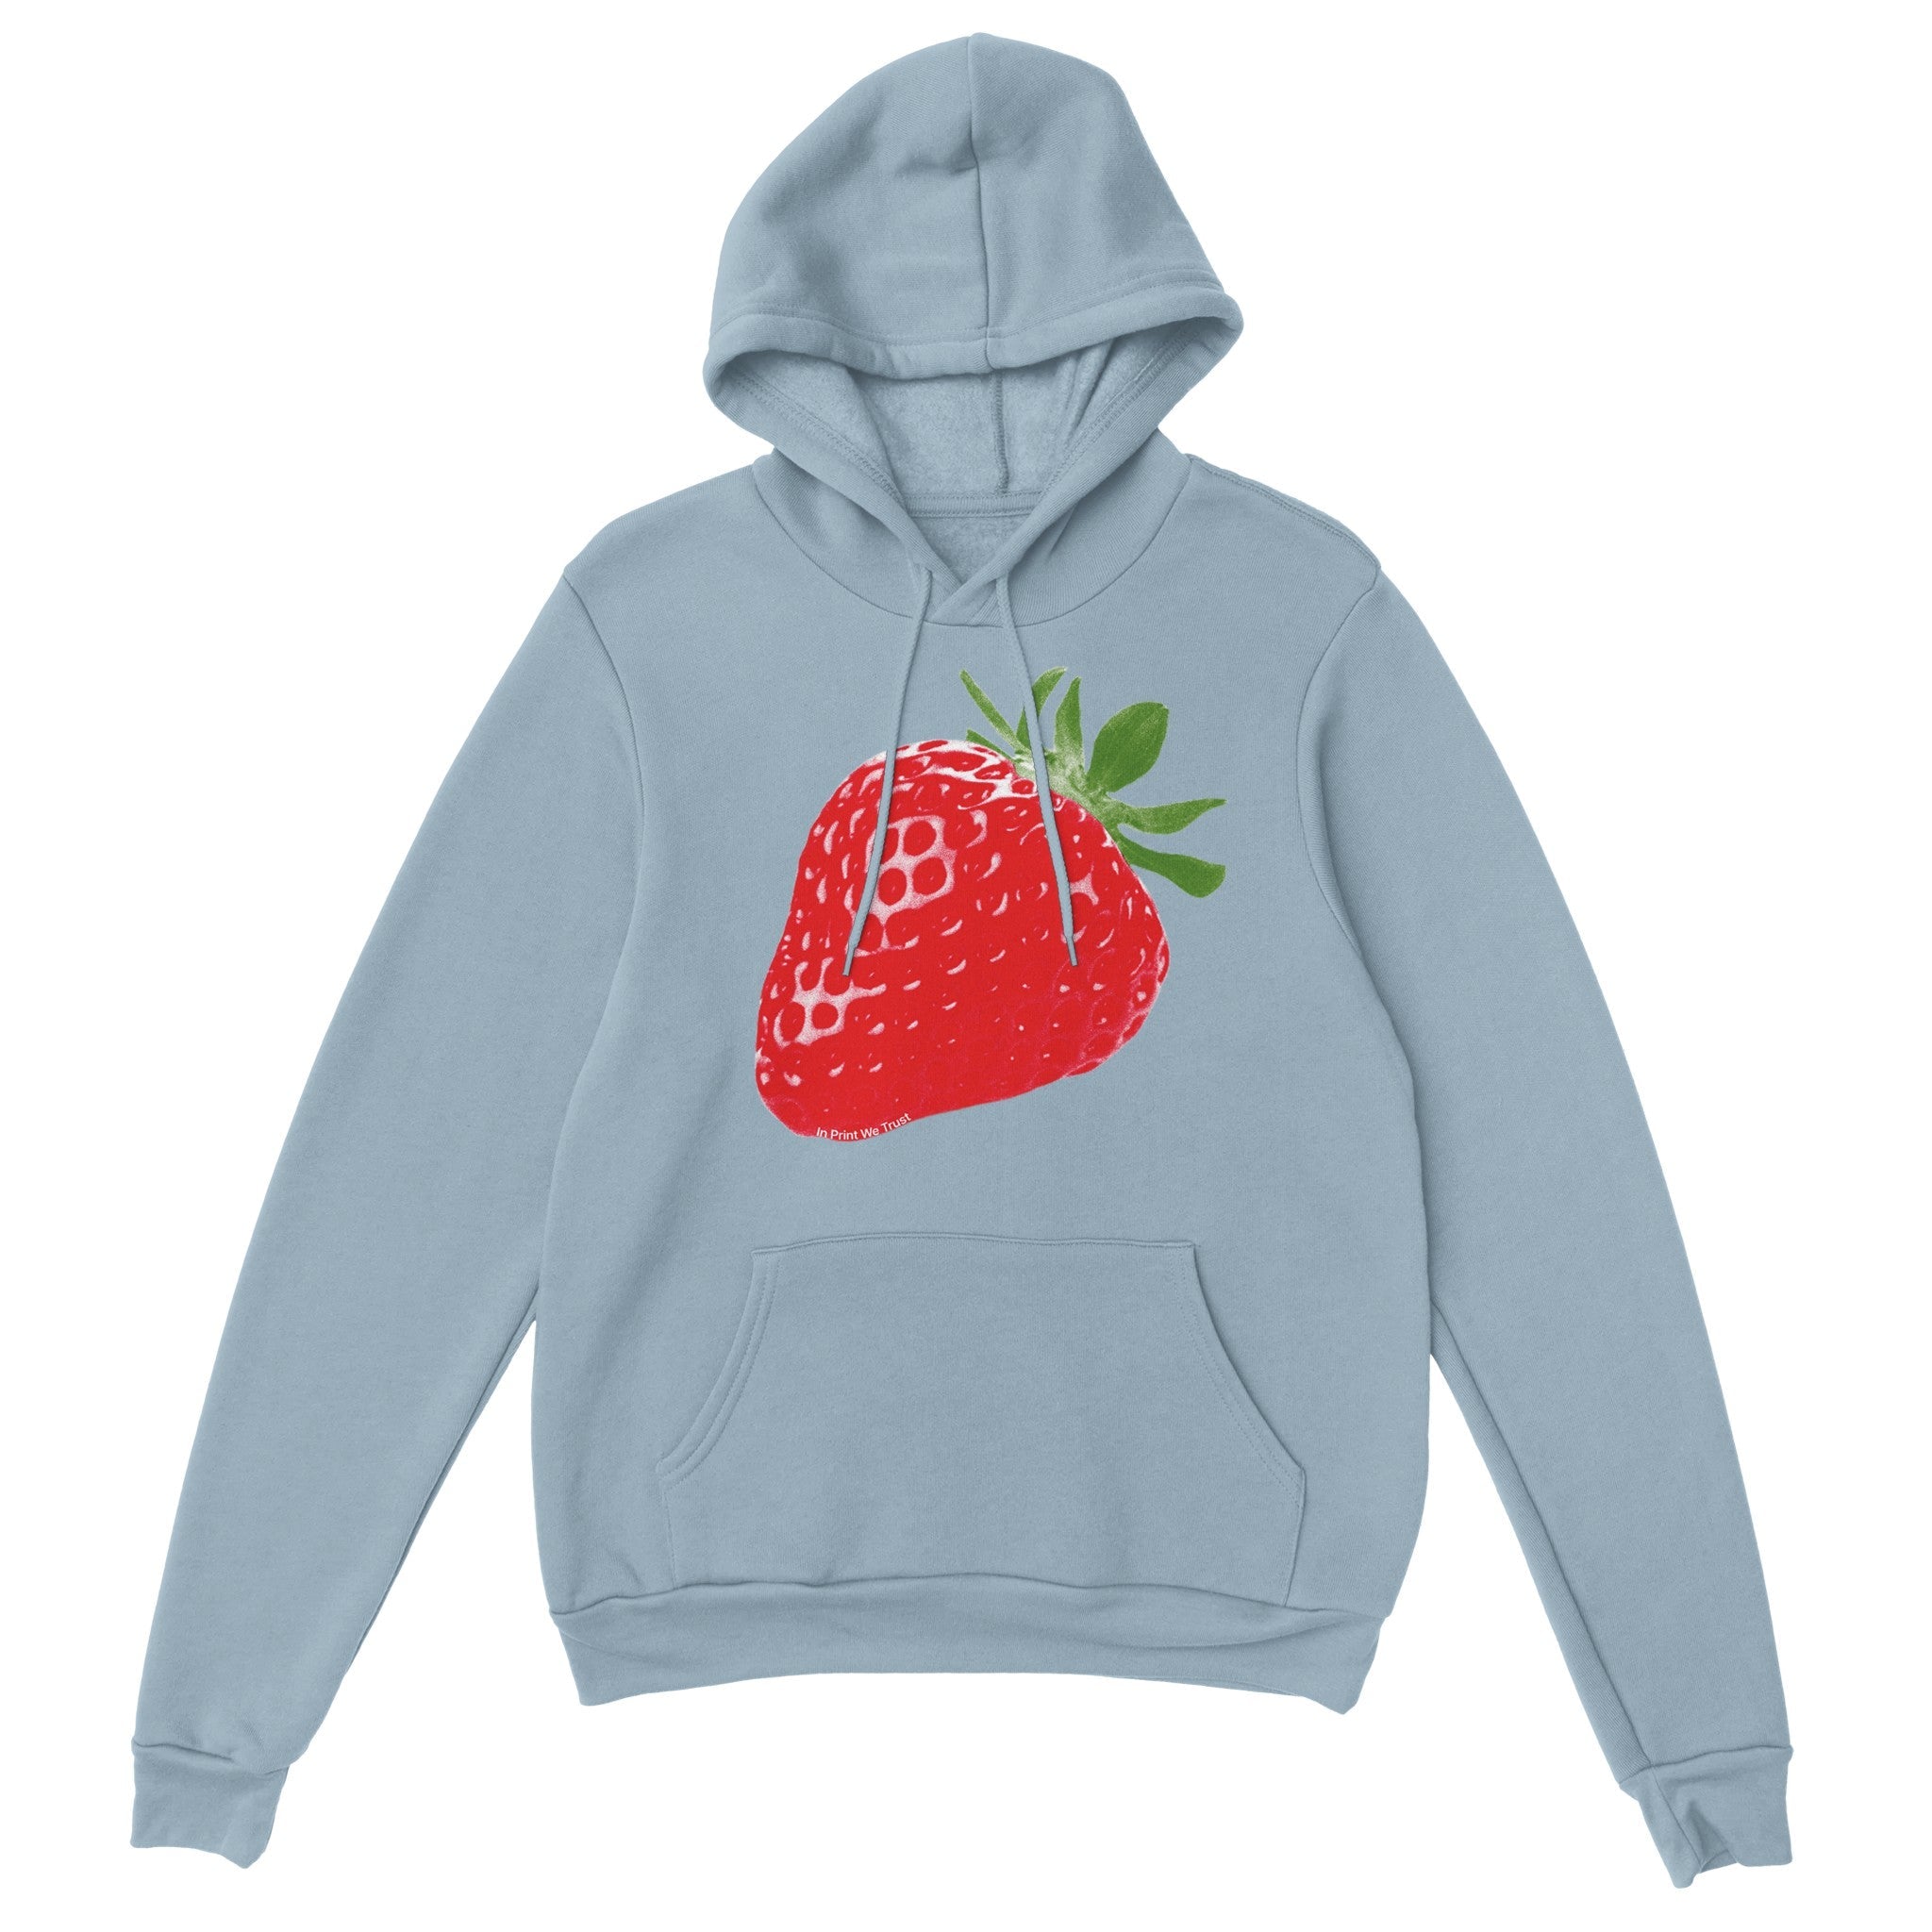 Strawberry Fields' hoodie